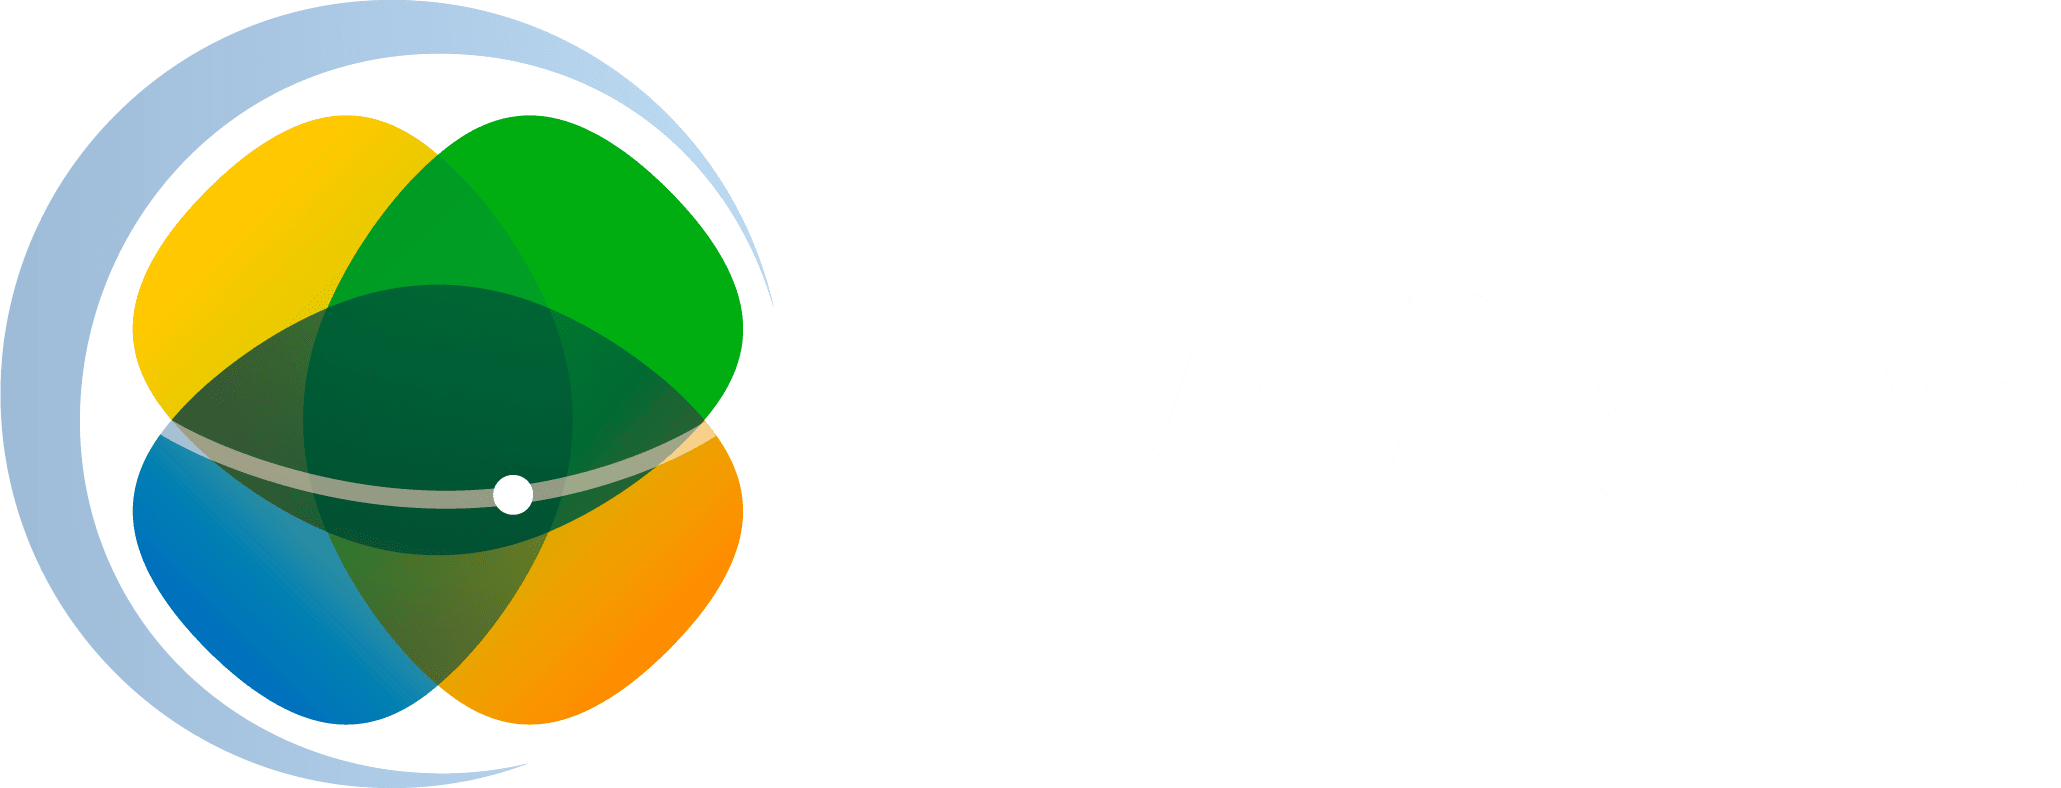 Logo EvoLand